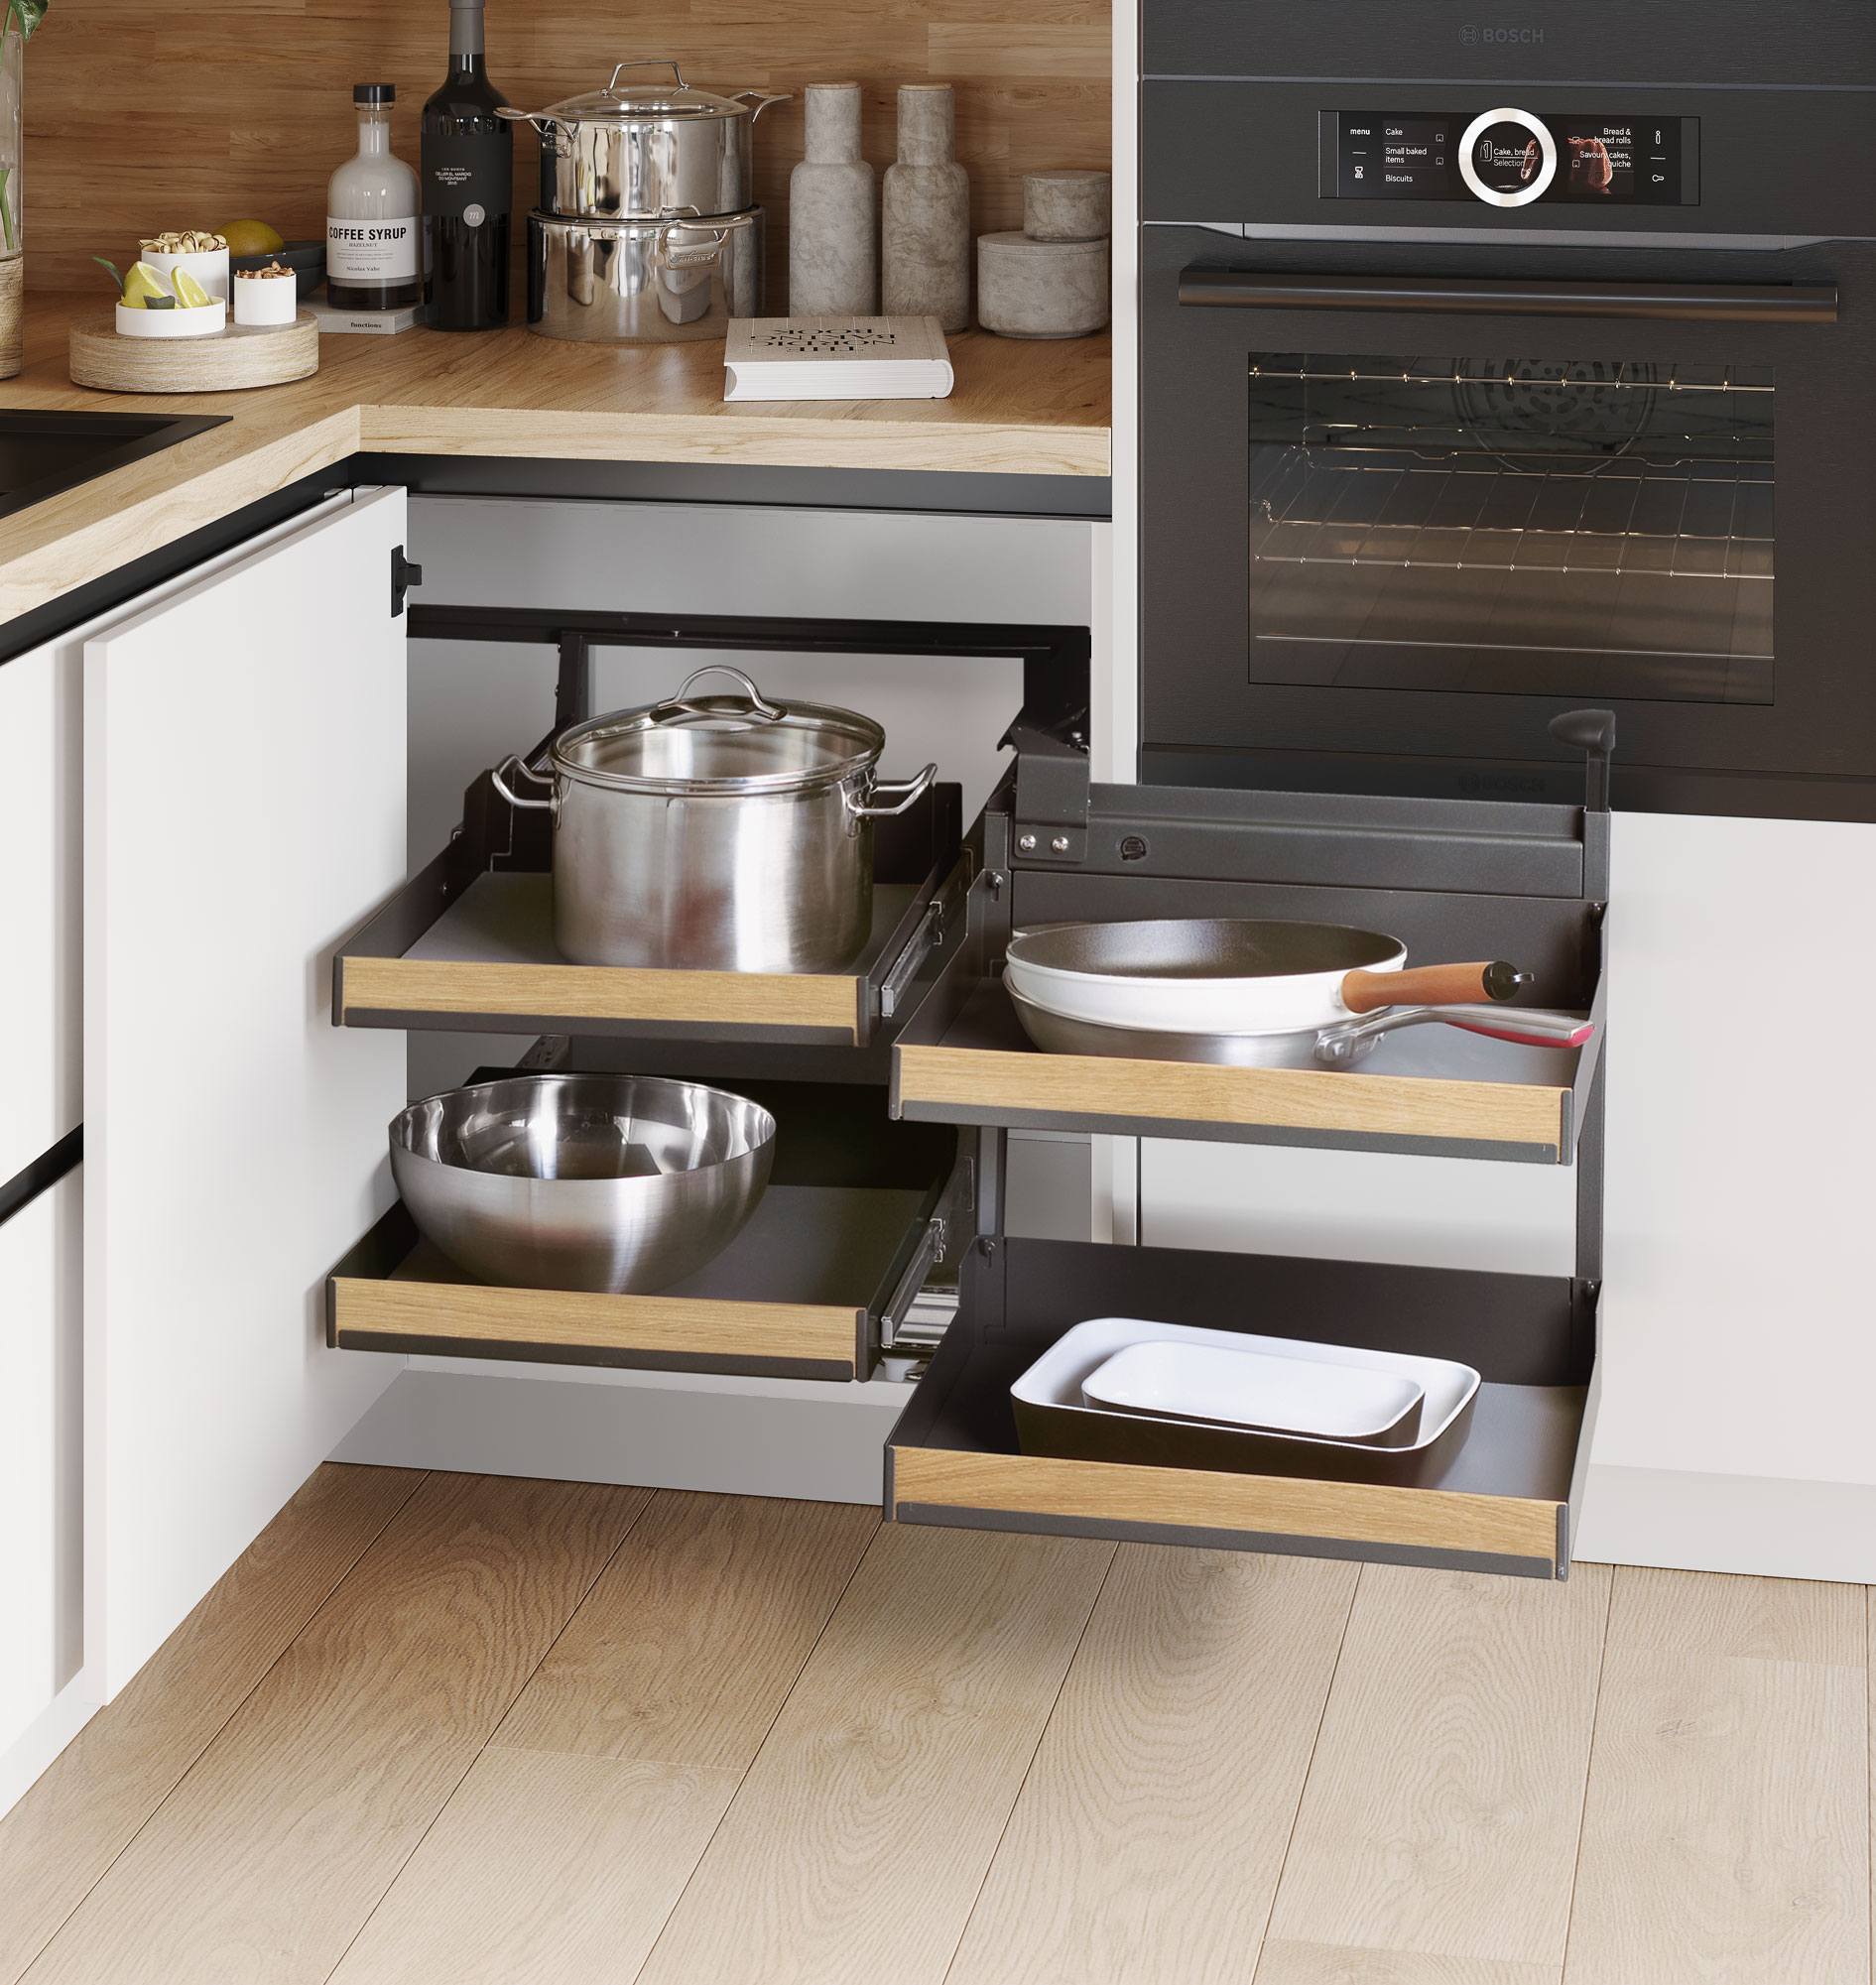 Consigue una cocina ordenada con estas prácticas soluciones de almacenaje